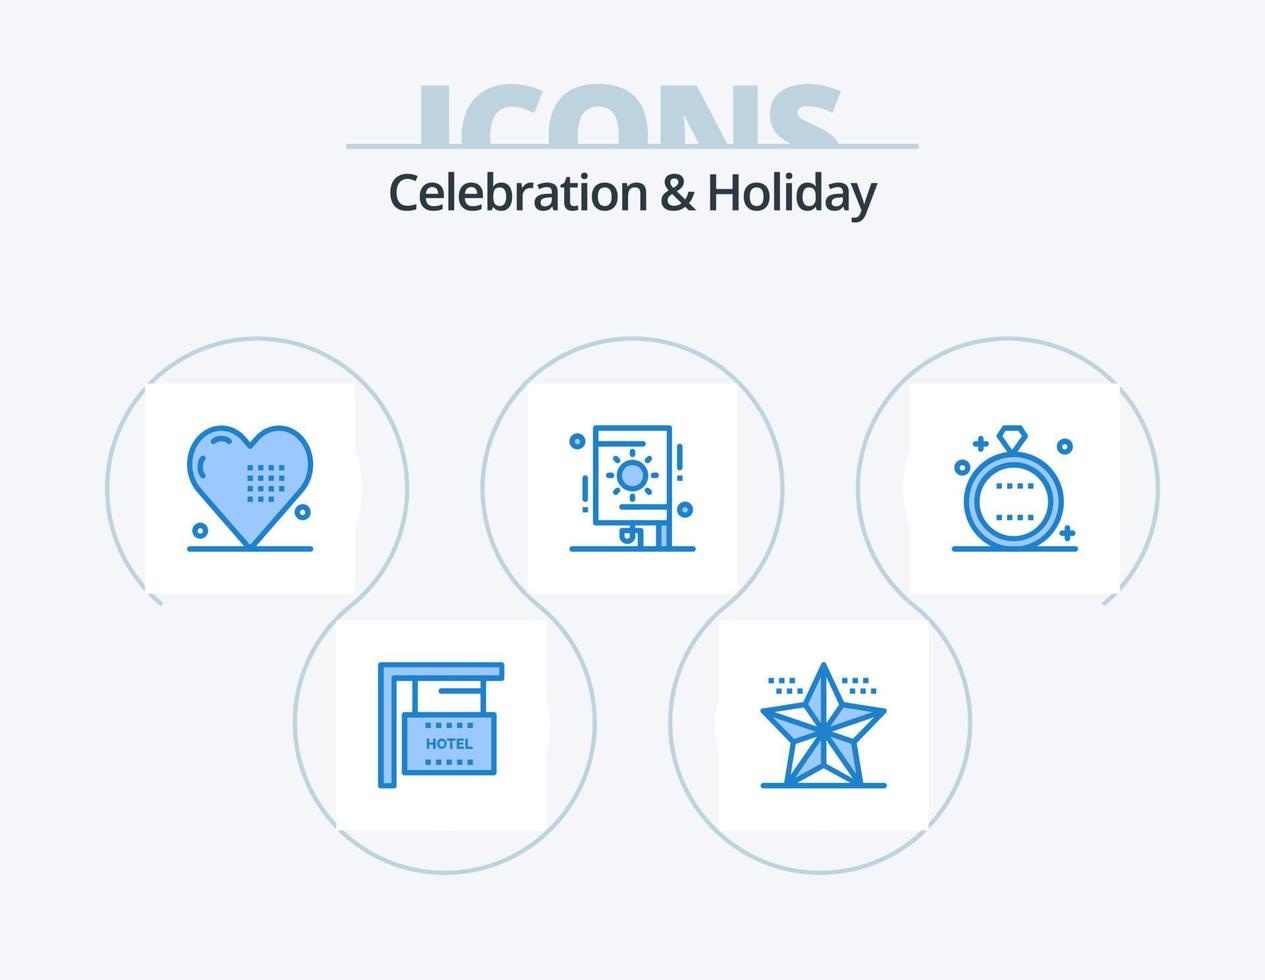 celebrazione e vacanza blu icona imballare 5 icona design. festa. Festival. stella. celebrazione. vacanza vettore